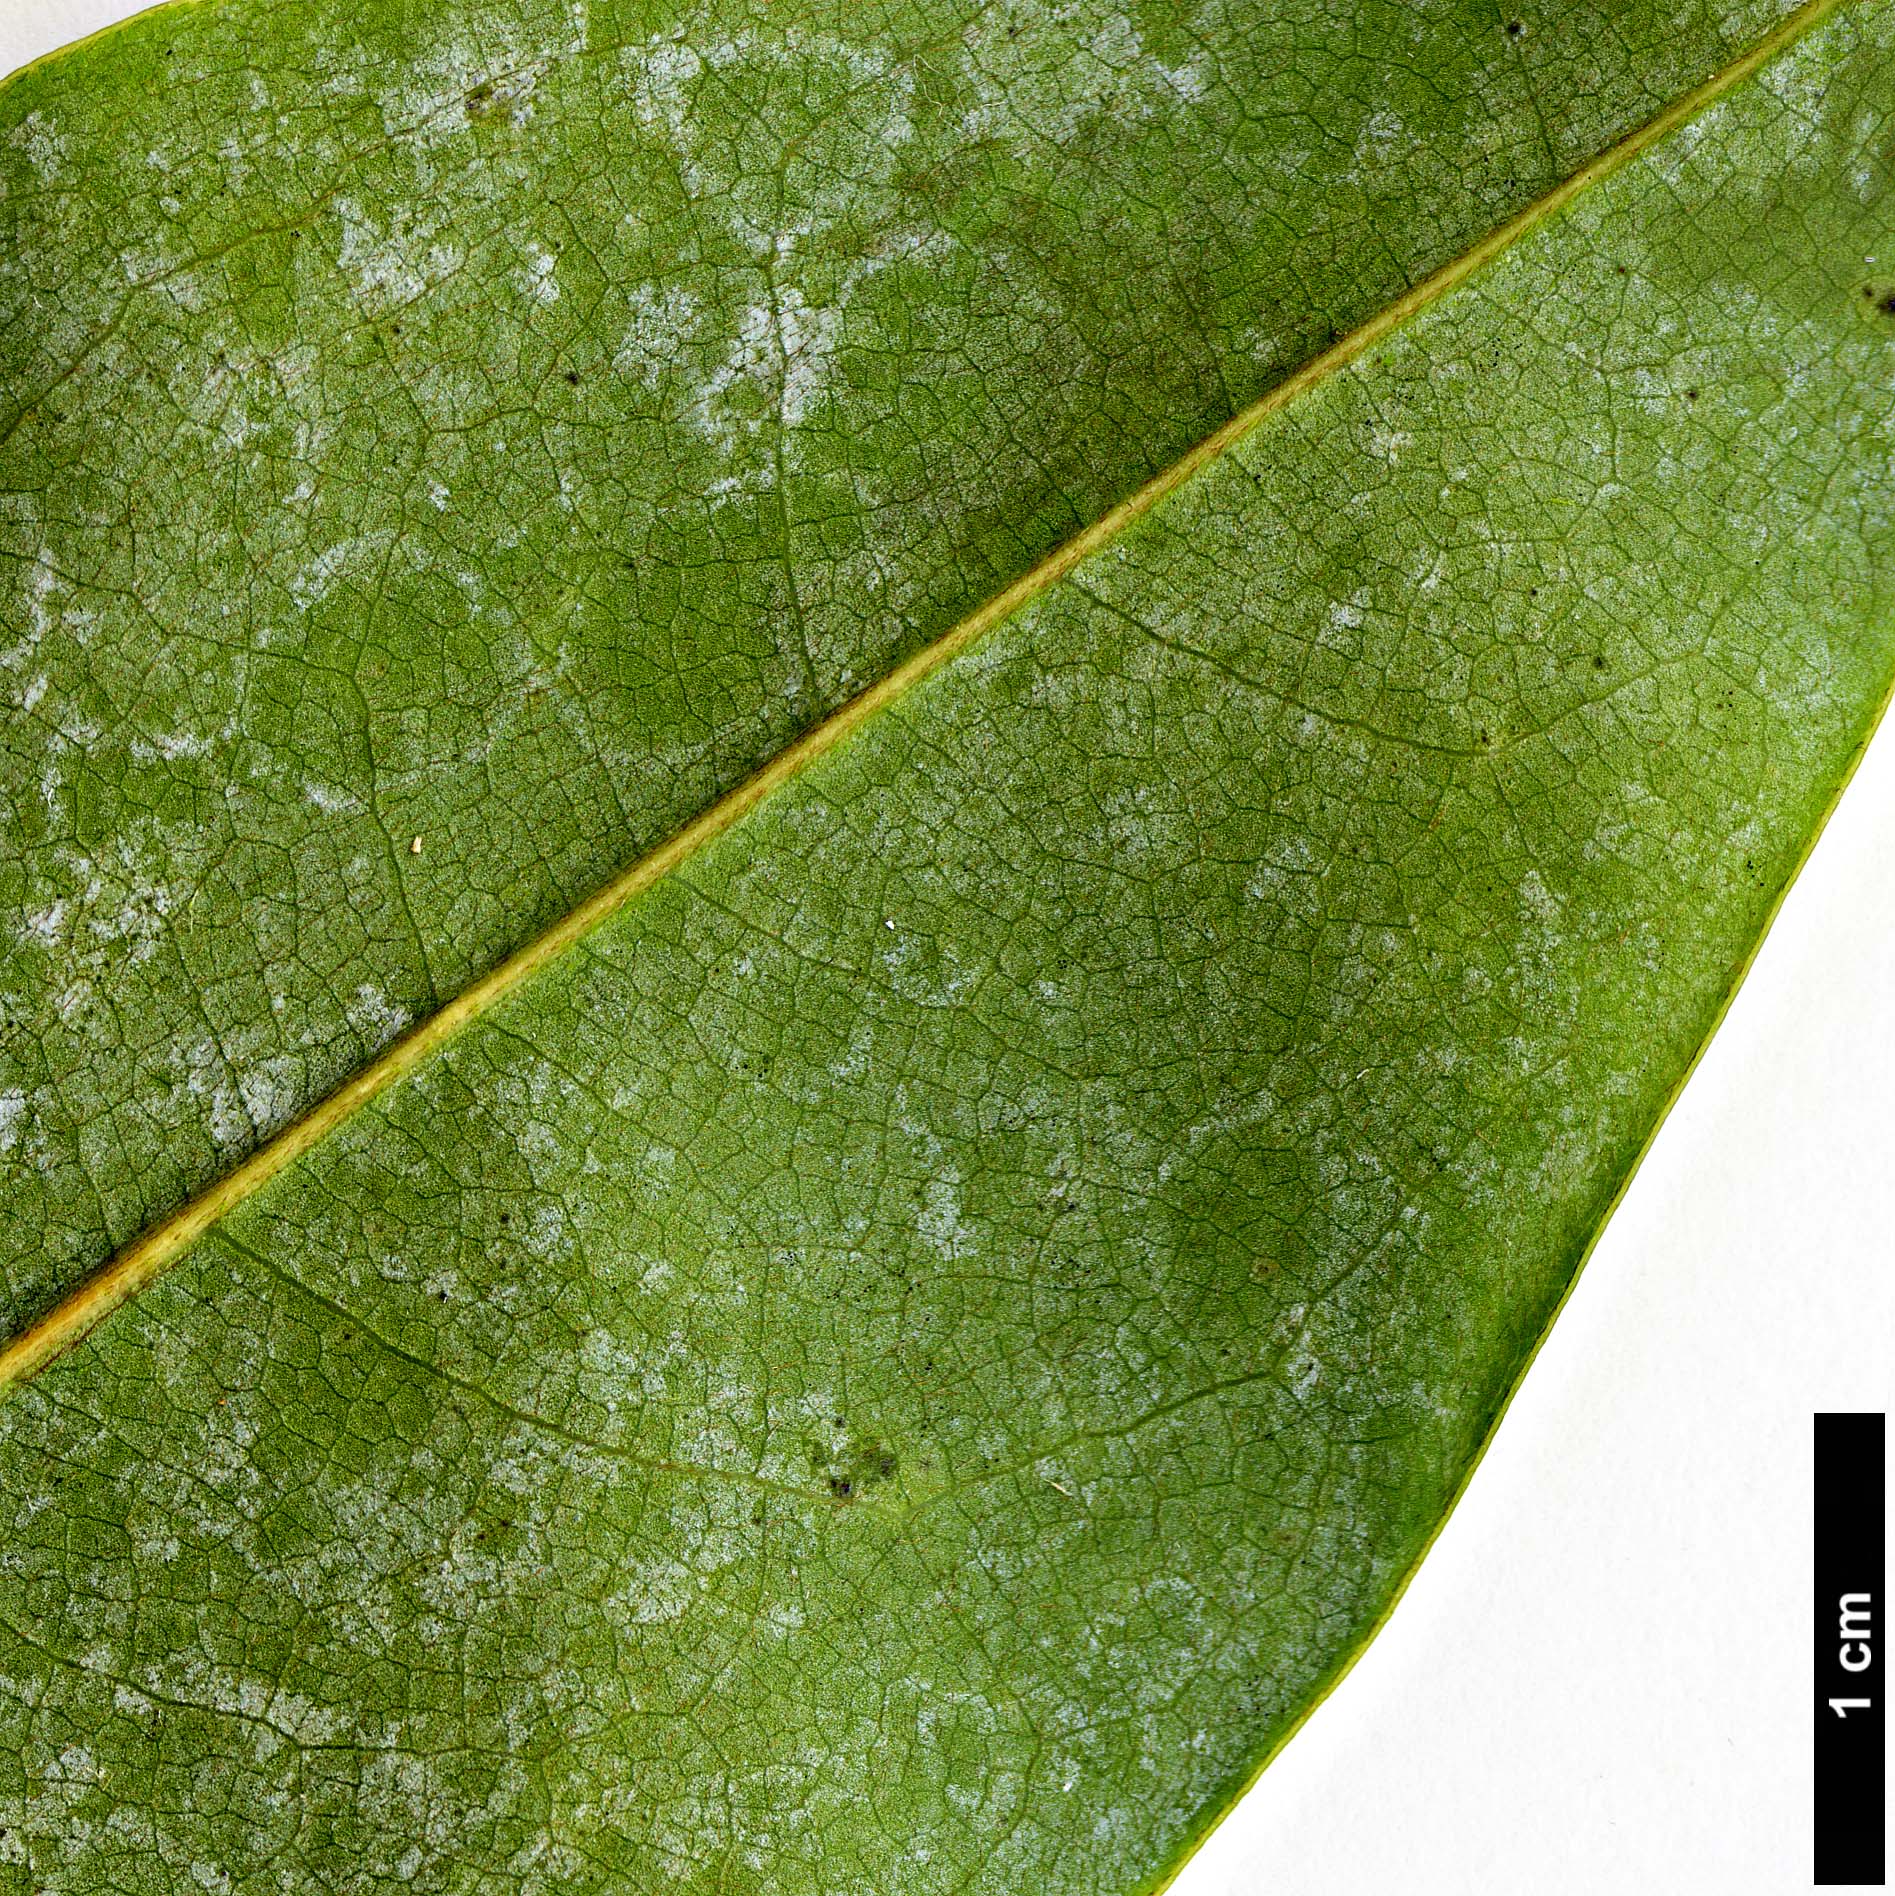 High resolution image: Family: Magnoliaceae - Genus: Magnolia - Taxon: floribunda